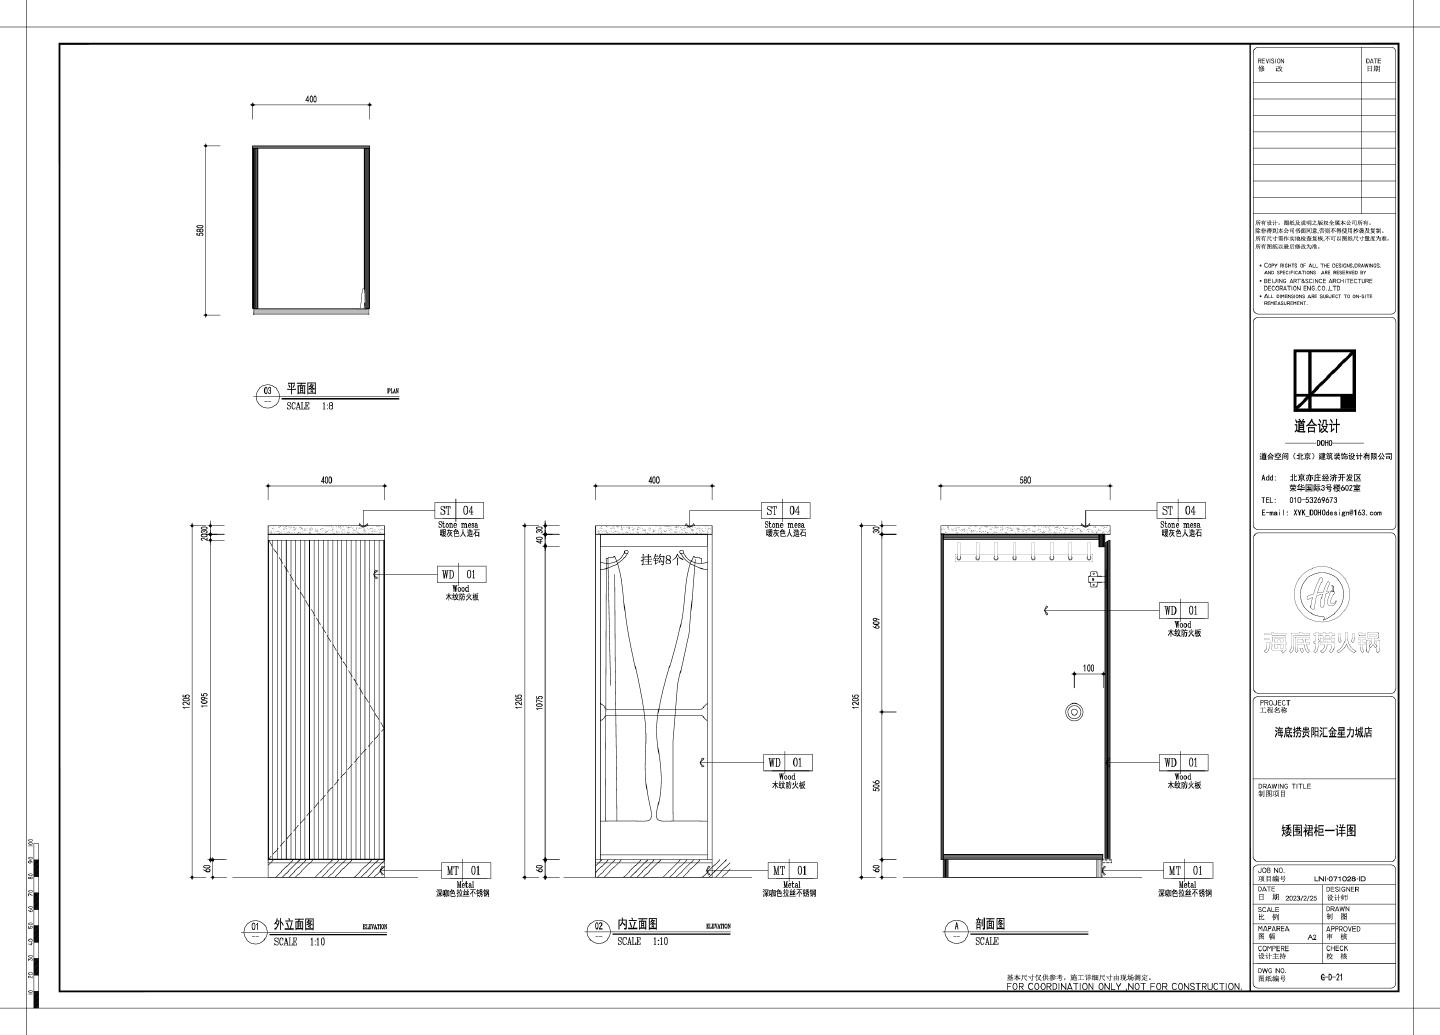 海某捞餐厅矮功能柜结构设计图